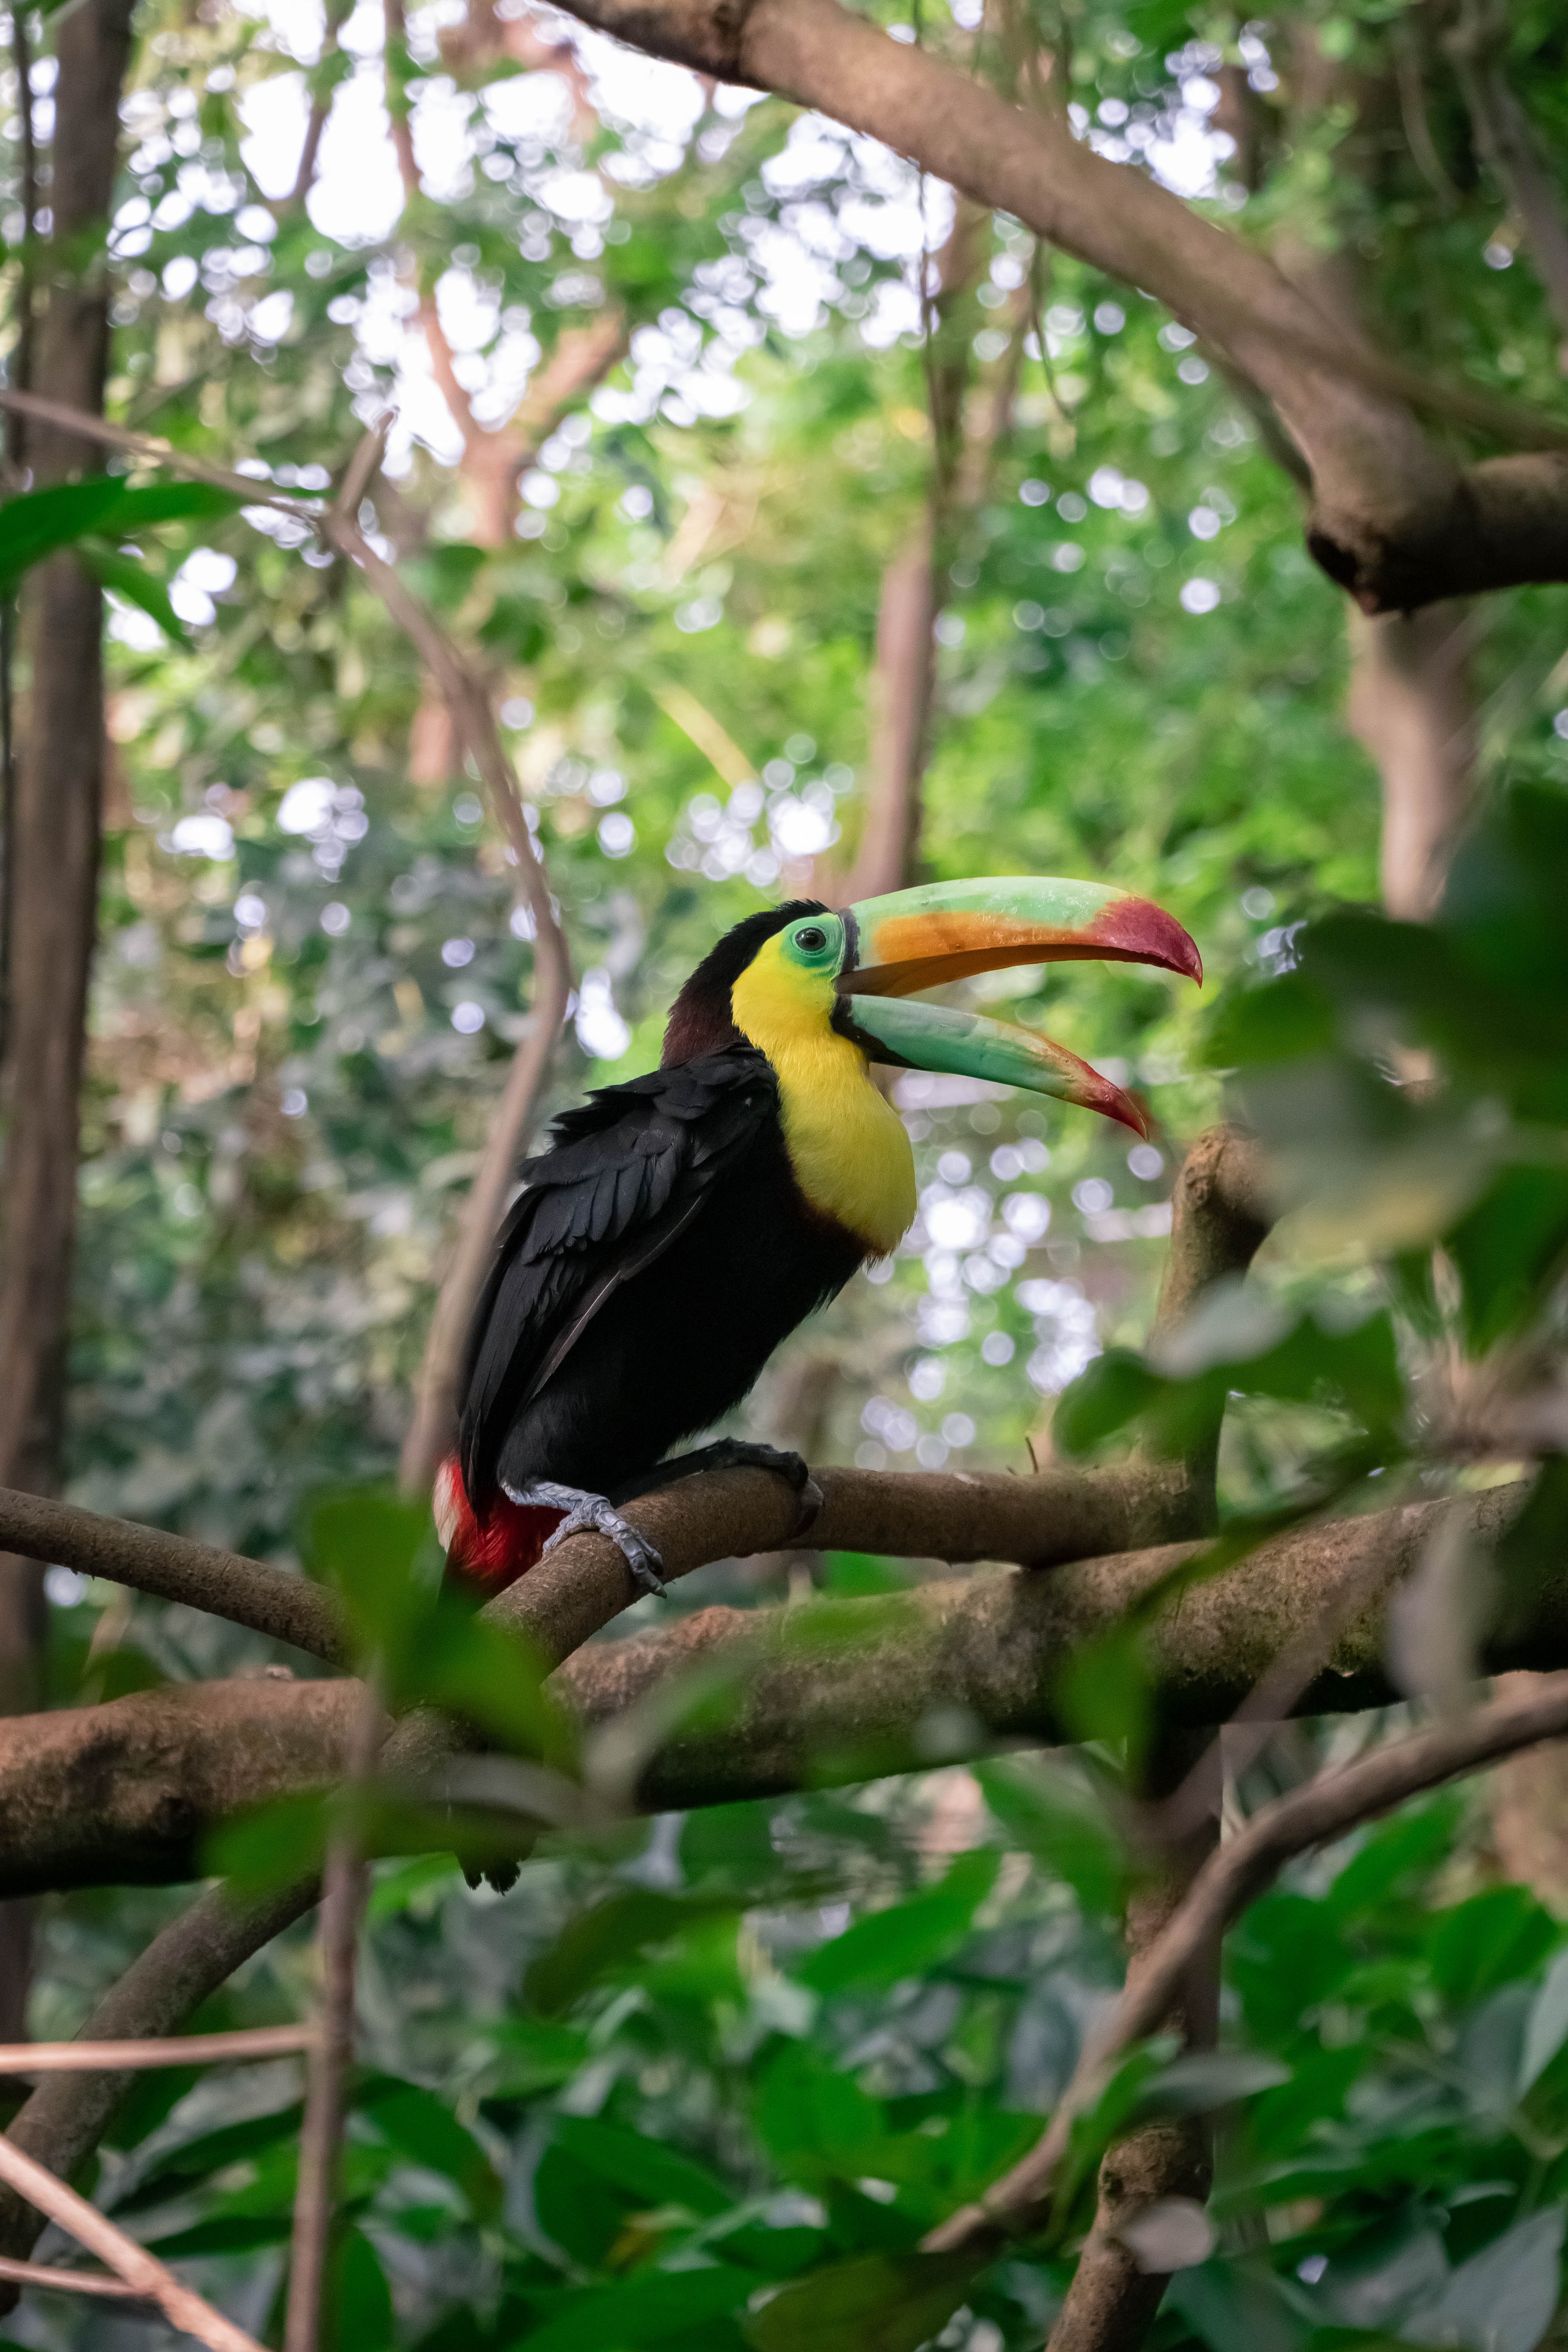 Bird in a rainforest.